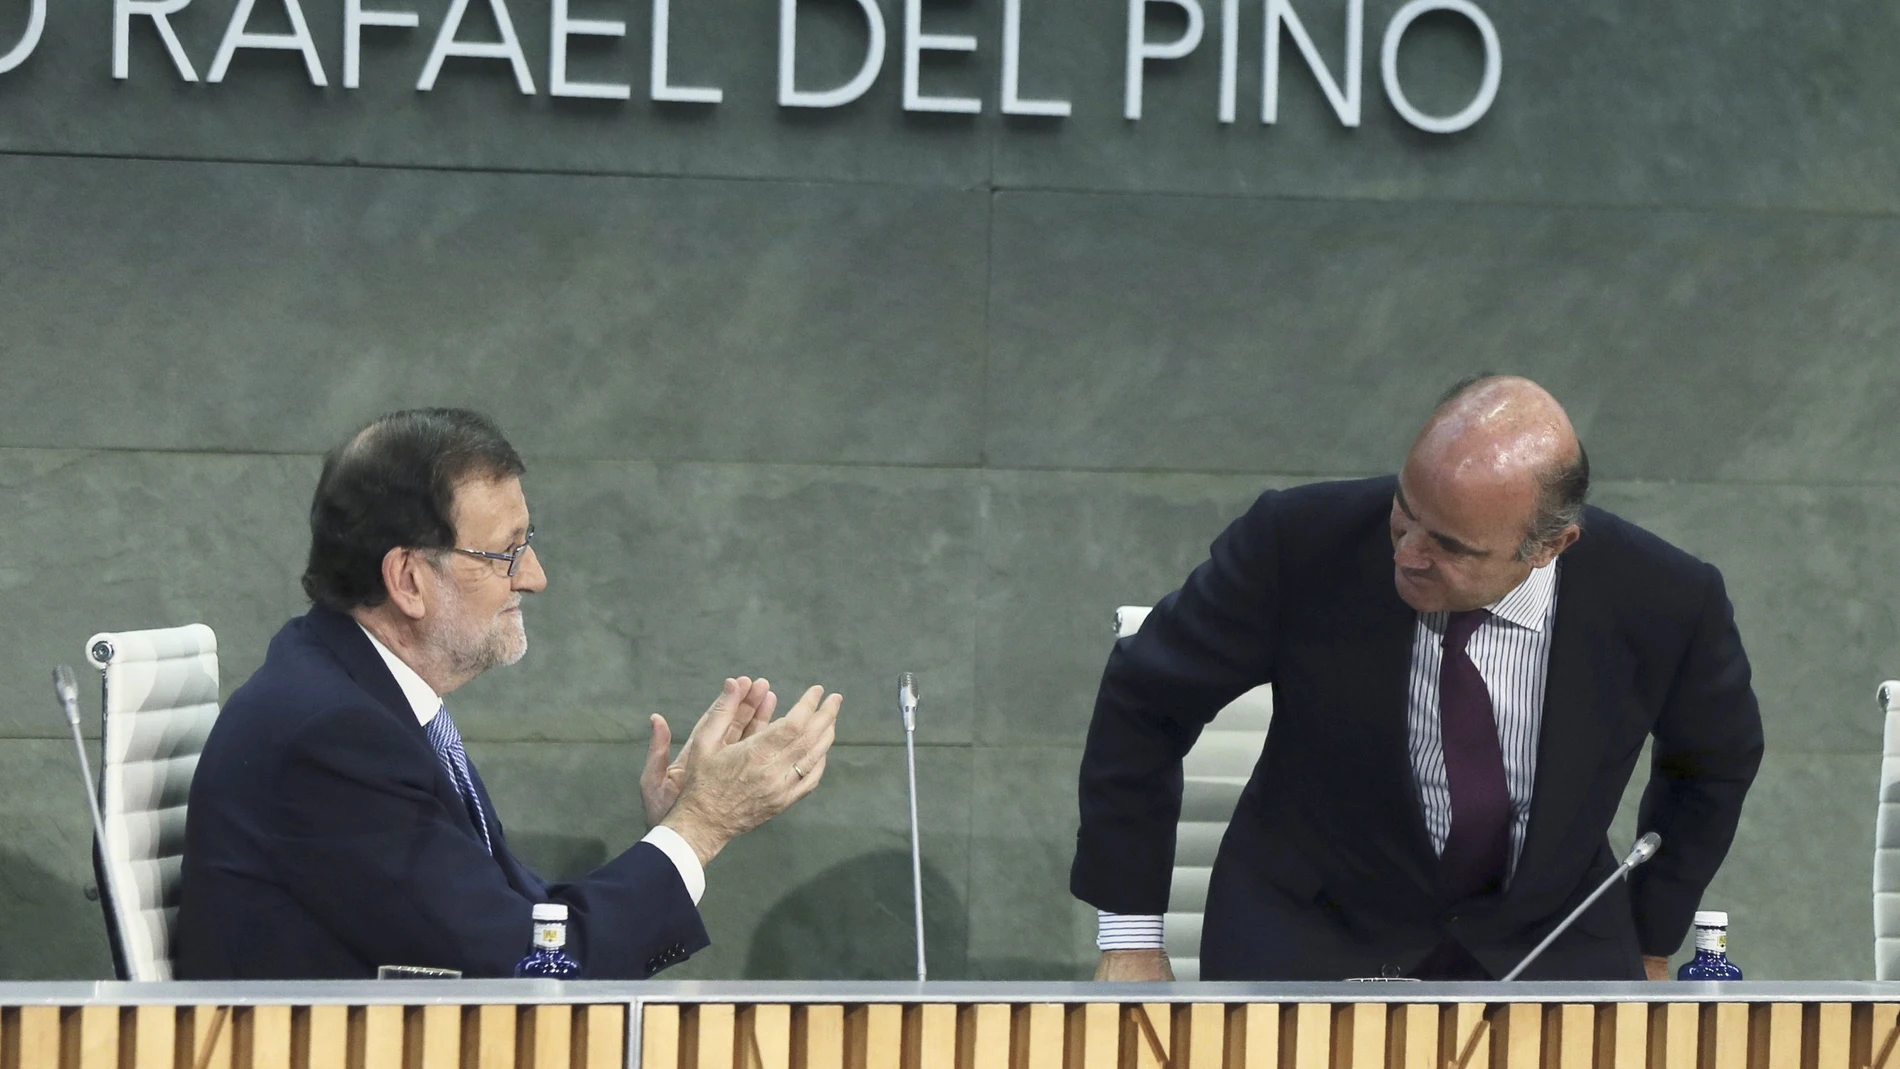 El presidente del Gobierno en funciones, Mariano Rajoy, aplaude la intervención del ministro de Economía en funciones, Luis de Guindos